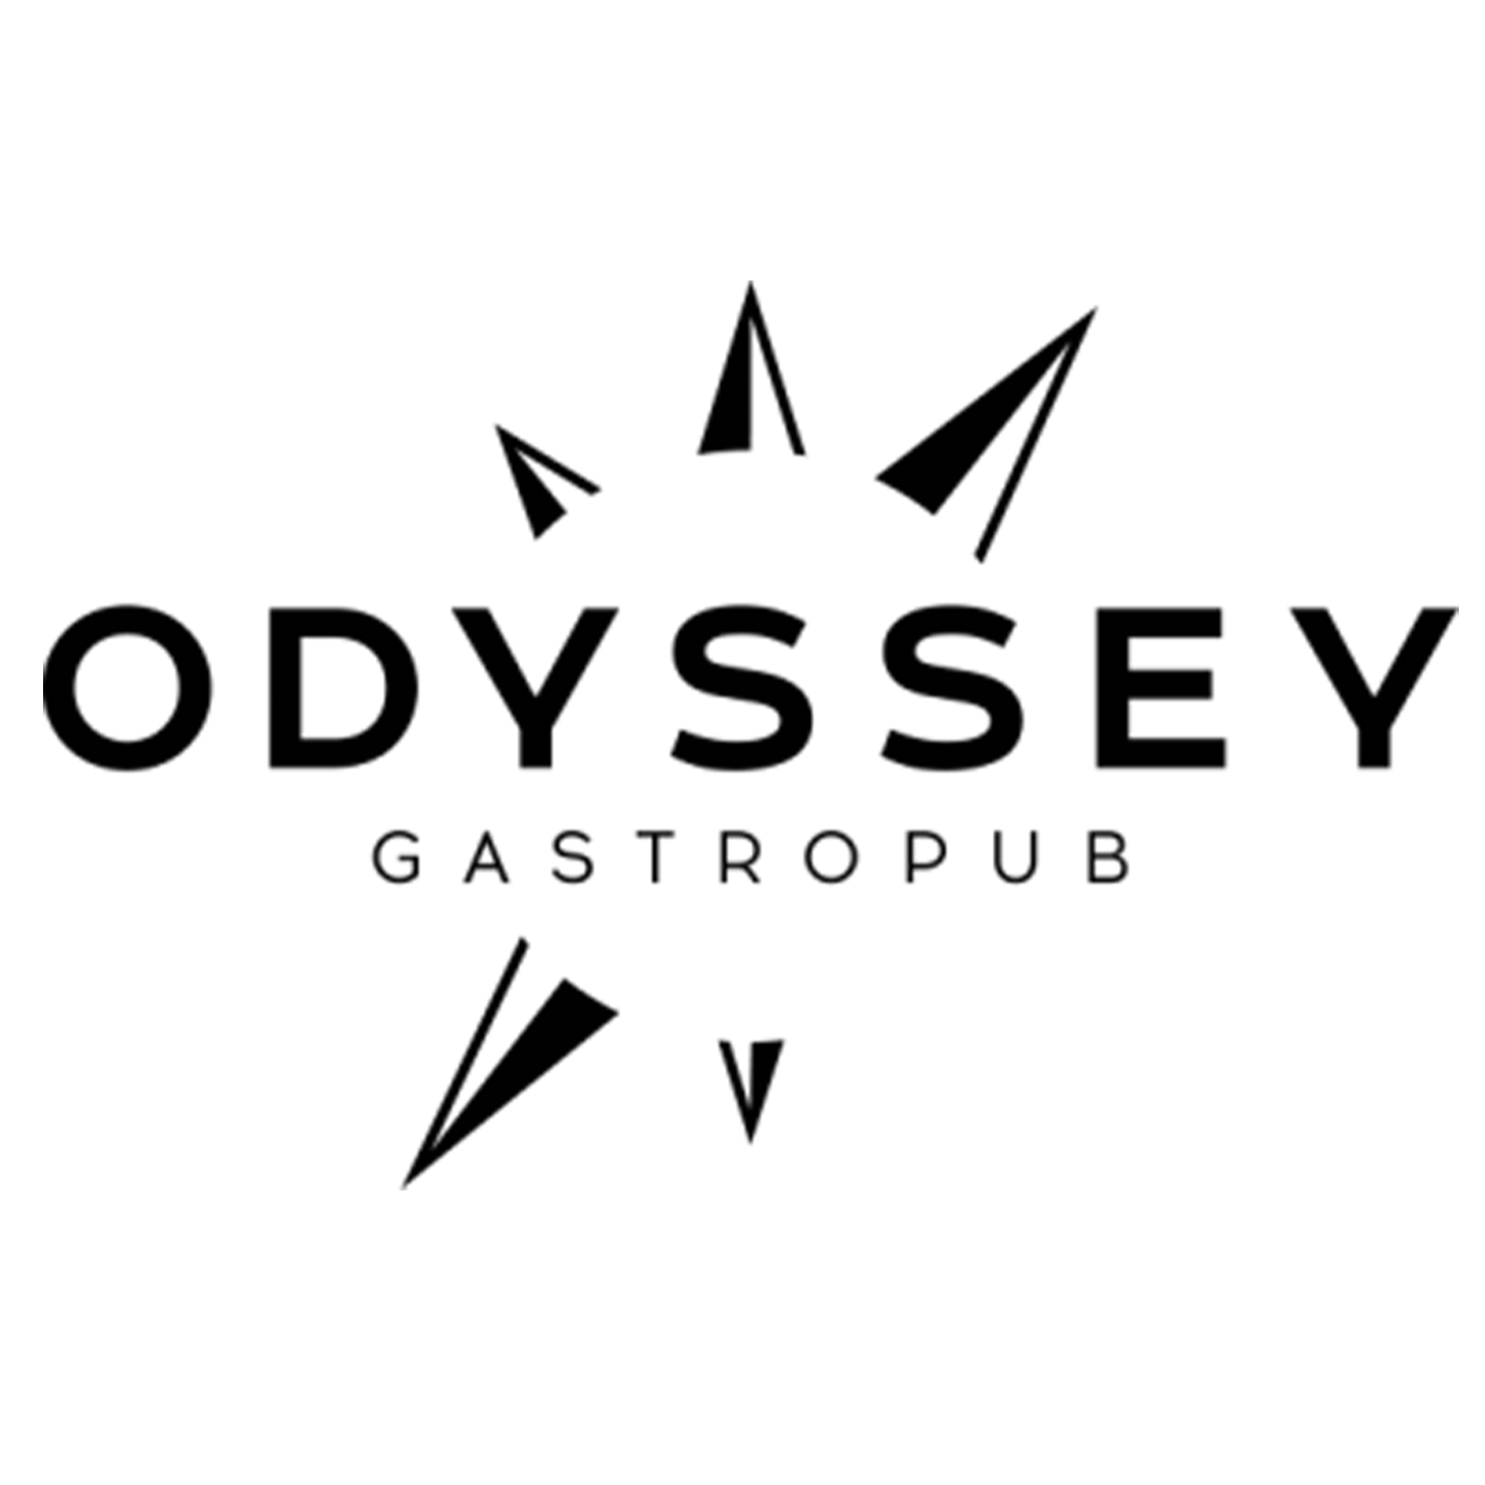 Odyssey Gastropub - Colorado Springs, CO 80903 - (719)999-5127 | ShowMeLocal.com